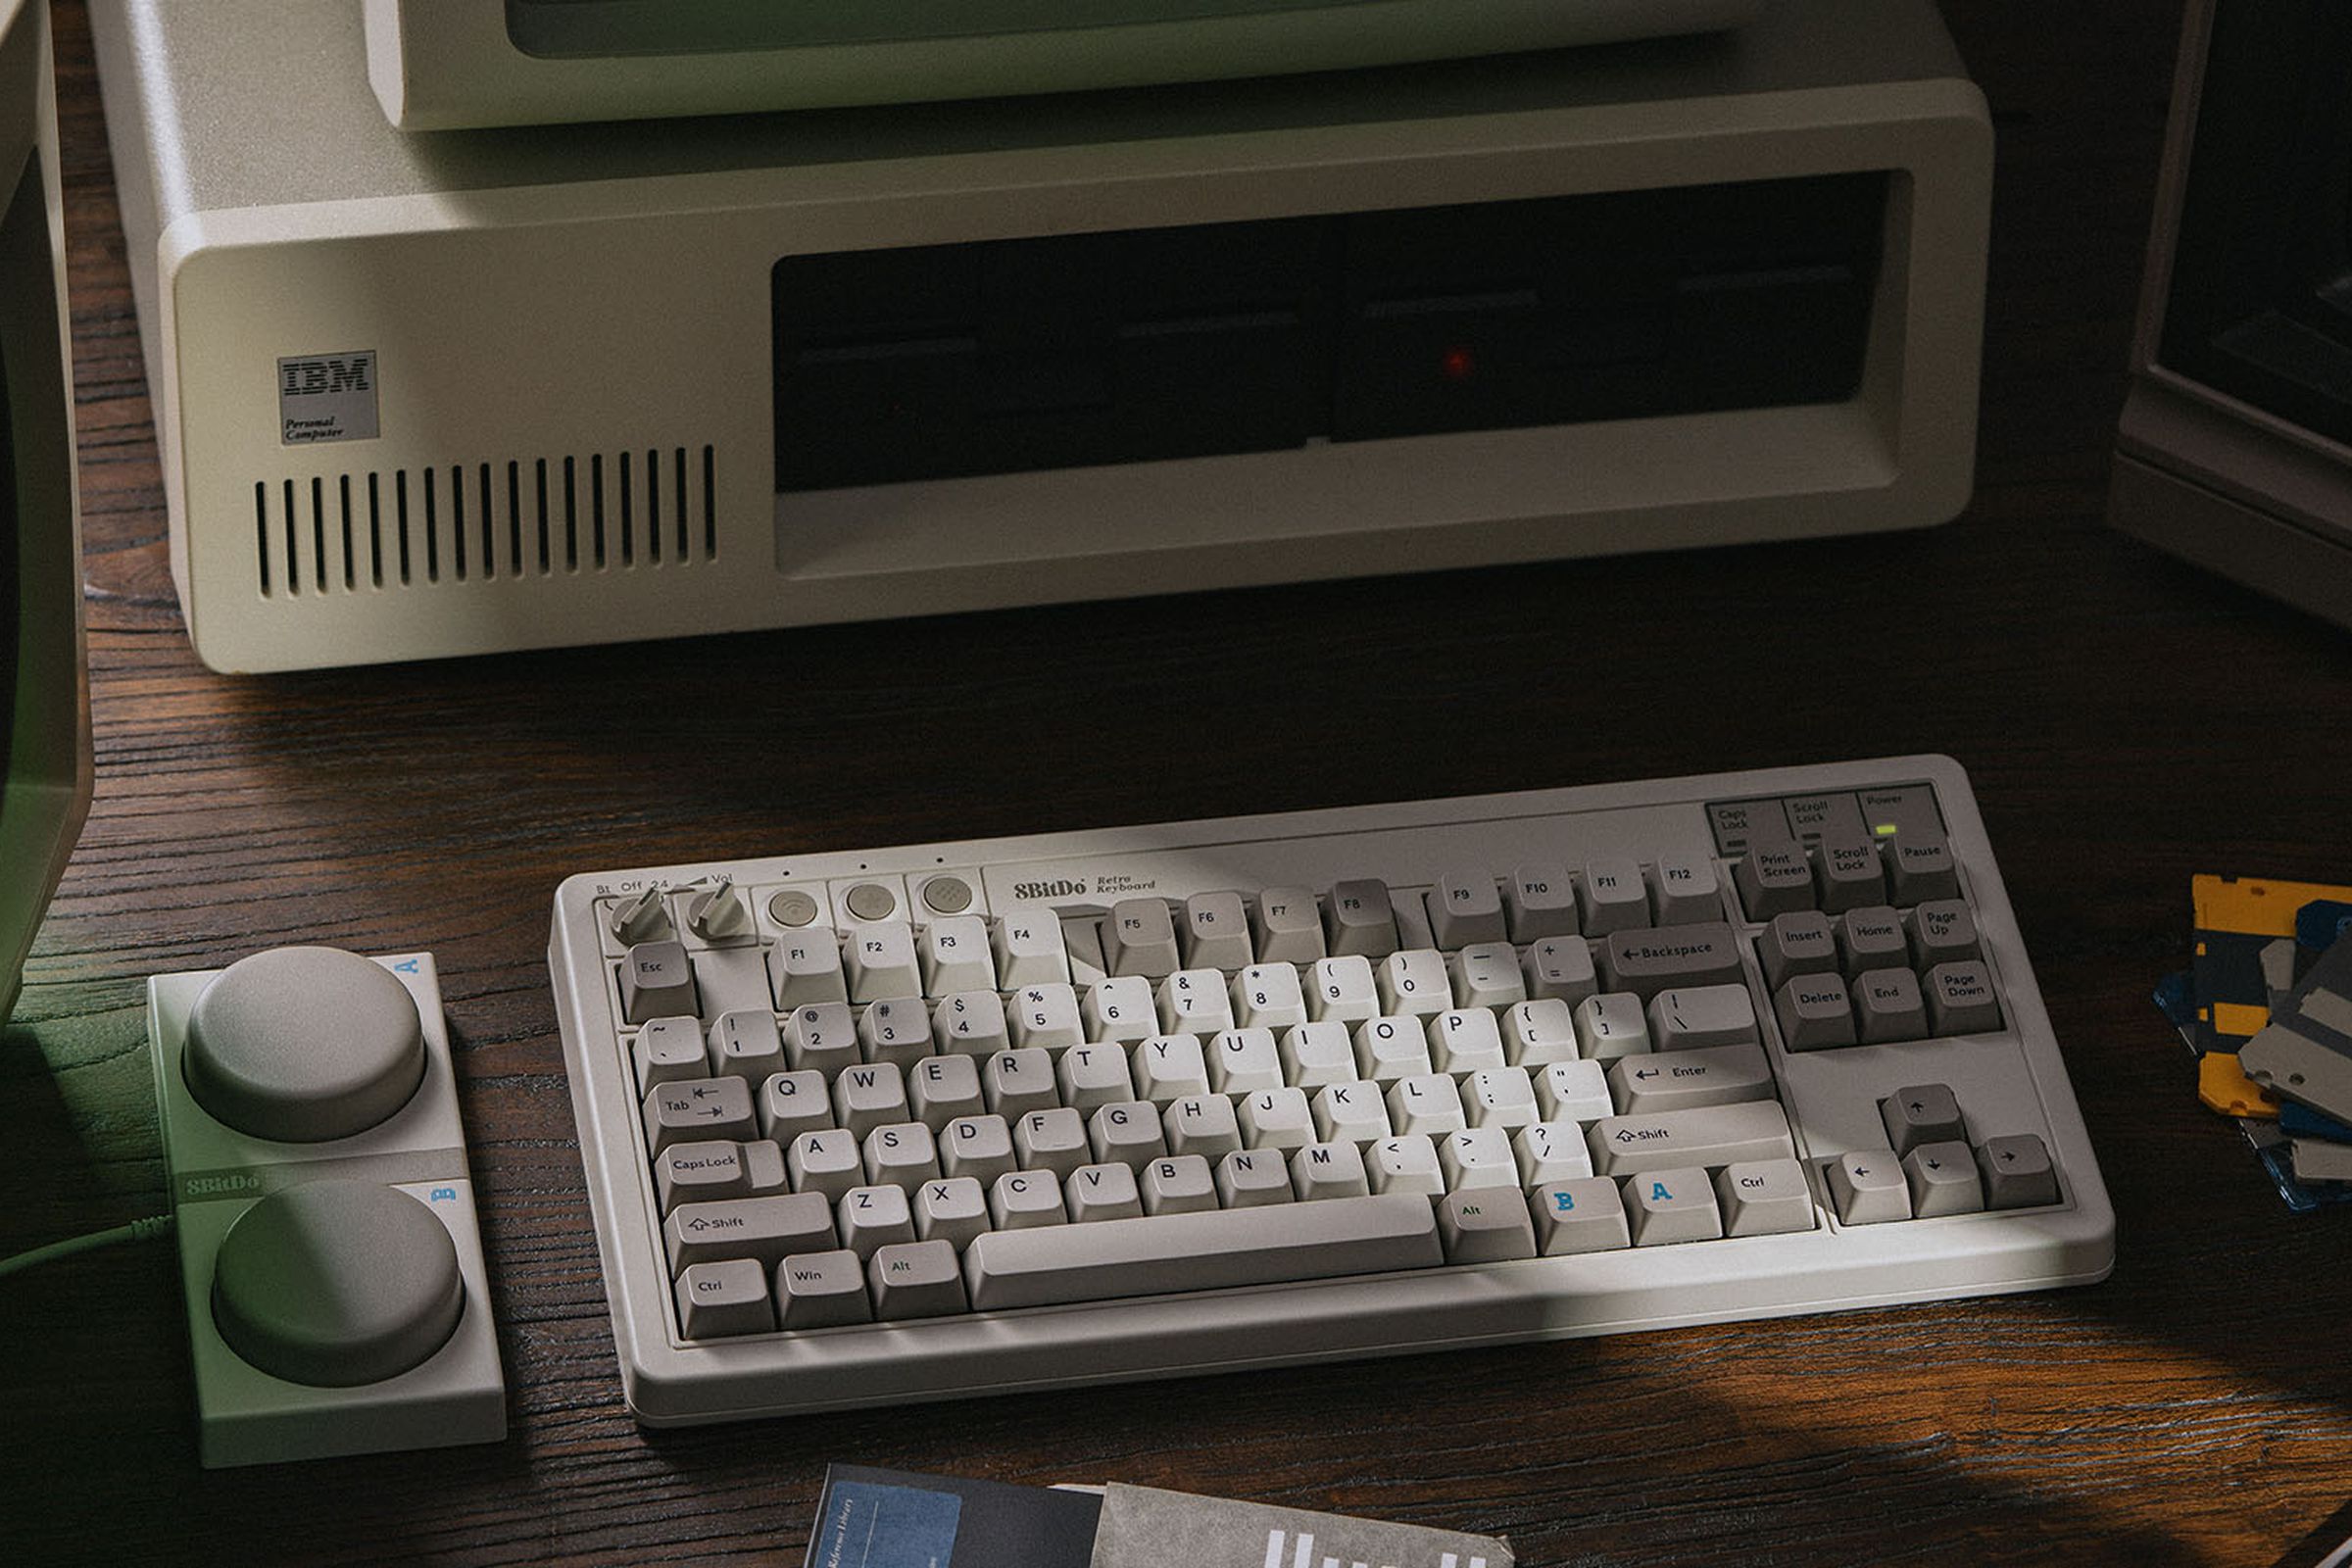 Keyboard mekanis 8BitDo Edisi M di atas meja di samping tombol makronya, di depan komputer IBM vintage.